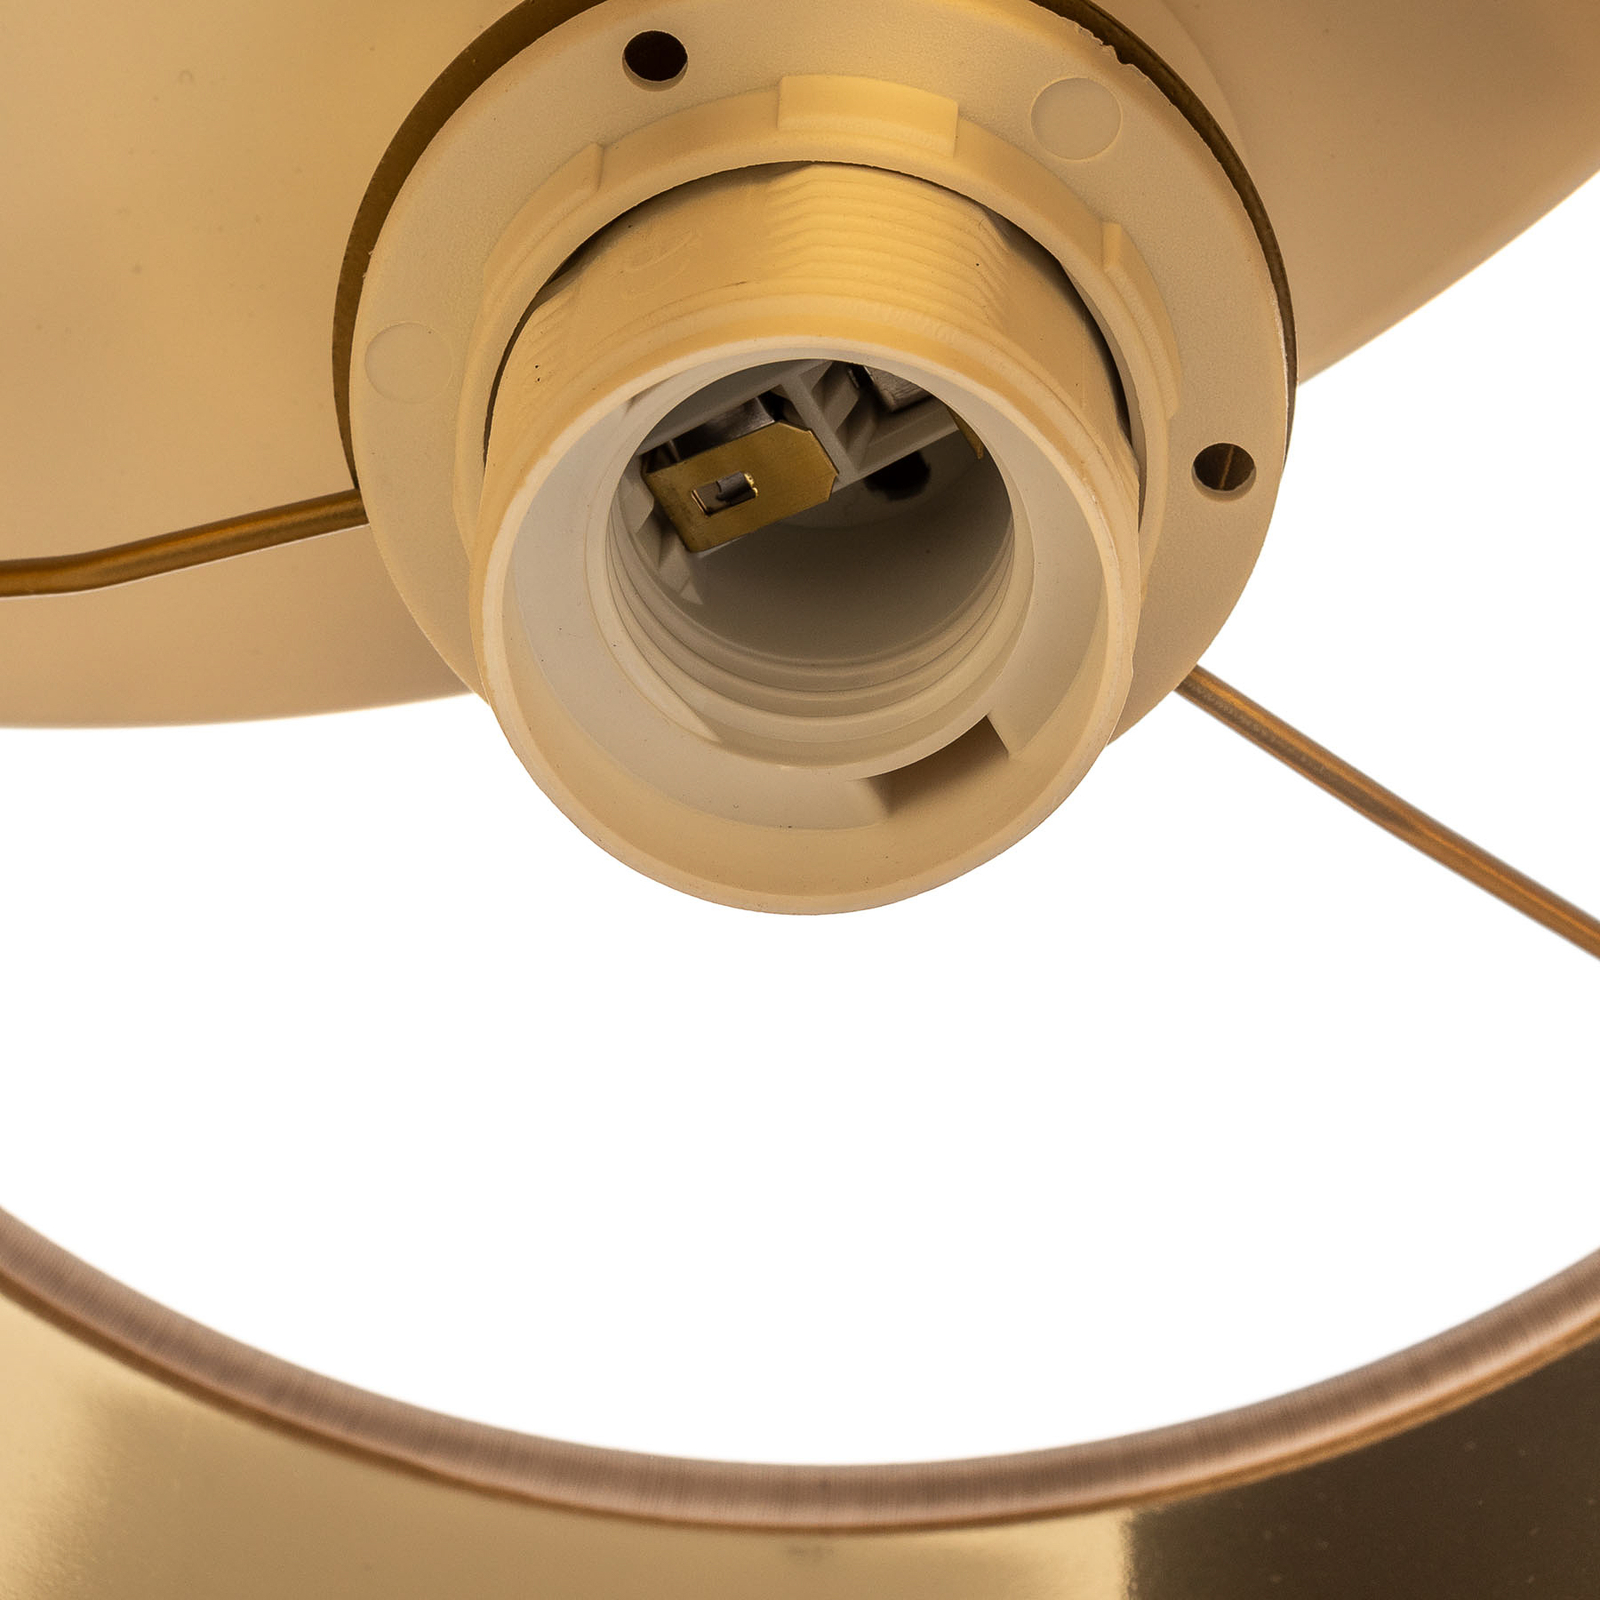 Soho ceiling light, cylindrical, 3-bulb, white/gold